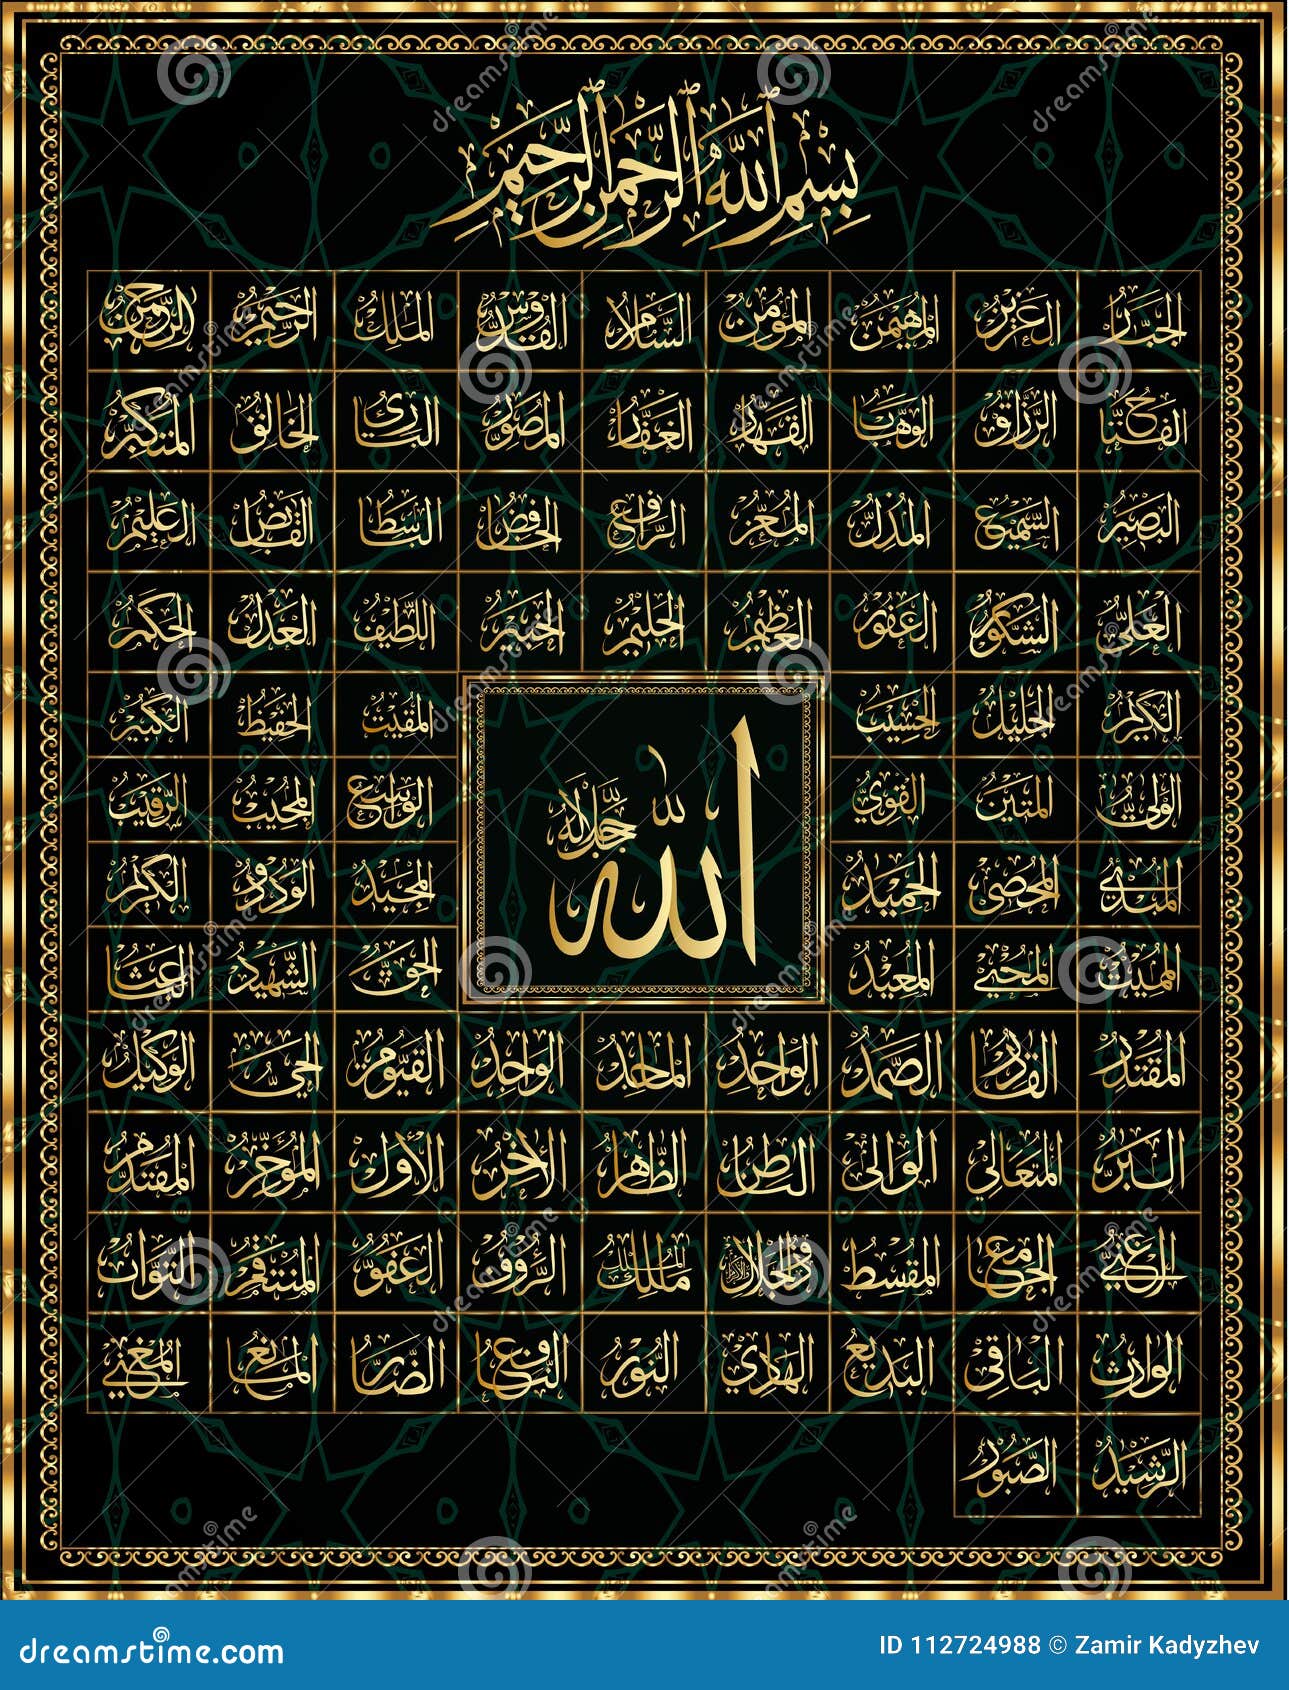 99 names of Allah. stock illustration. Illustration of kareem - 112724988